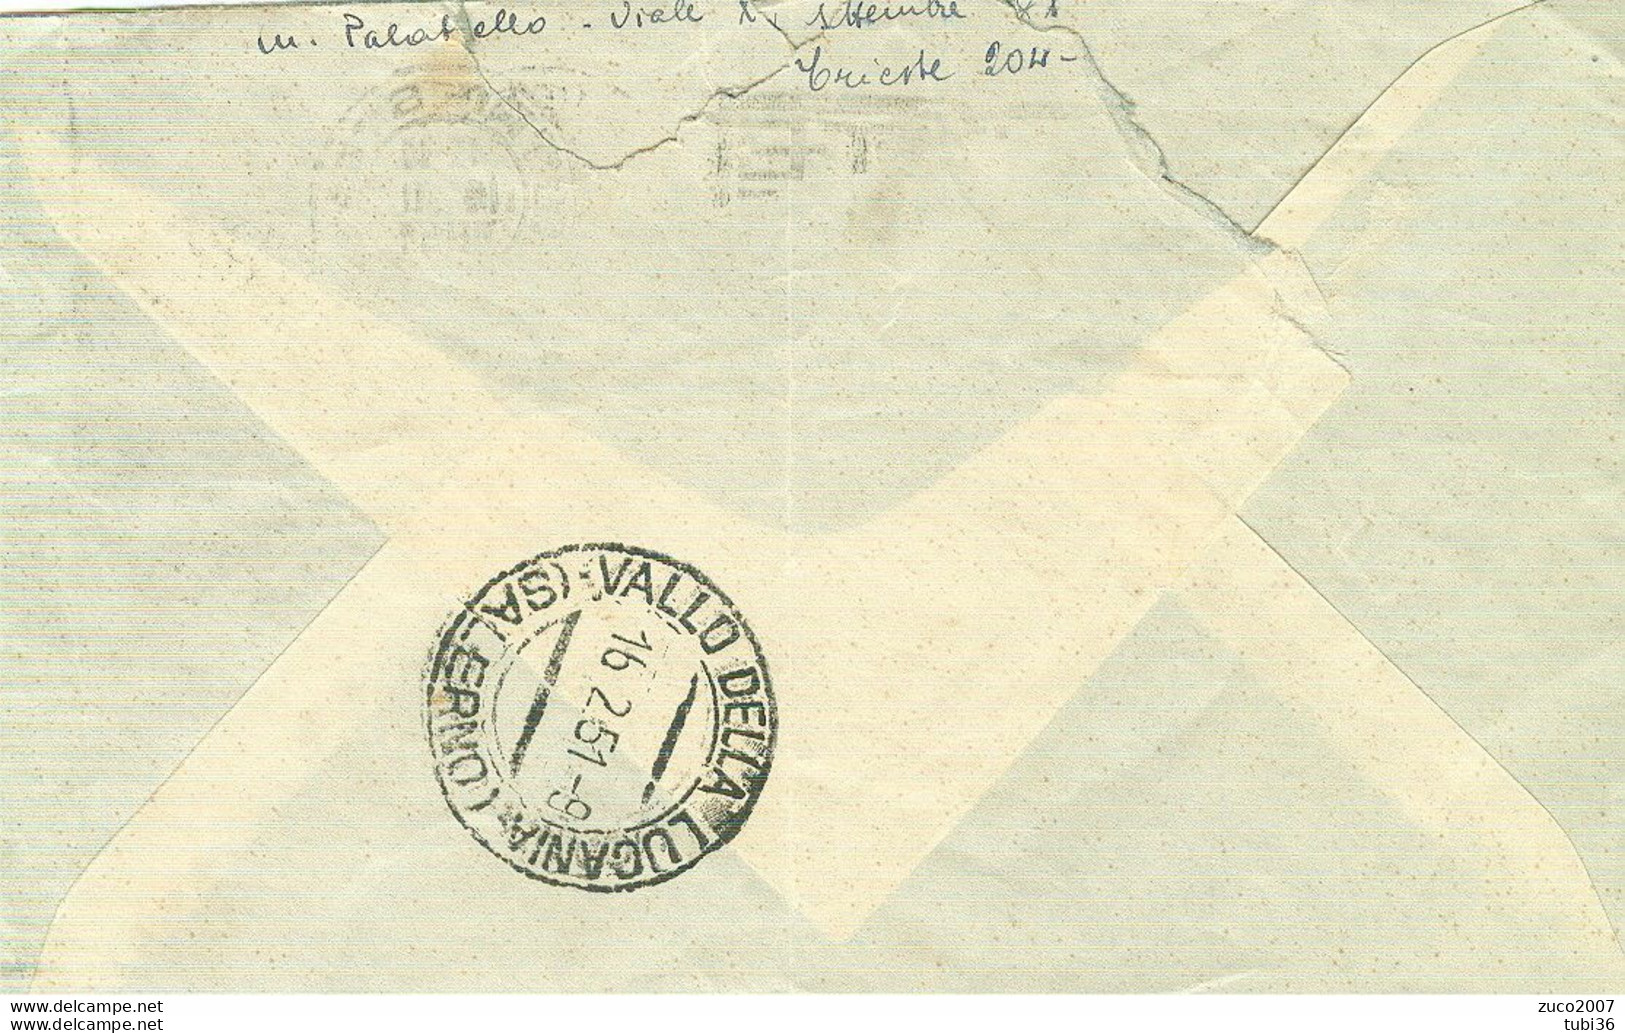 DEMOCRATICA £.20 AMG-FTT.-1951-TIMBRO POSTE TRIESTE TARGHETTA"DONATE SANGUE ALLA BANCA",VALLE DELLA LUCANIA (SALERNO) - Marcophilie